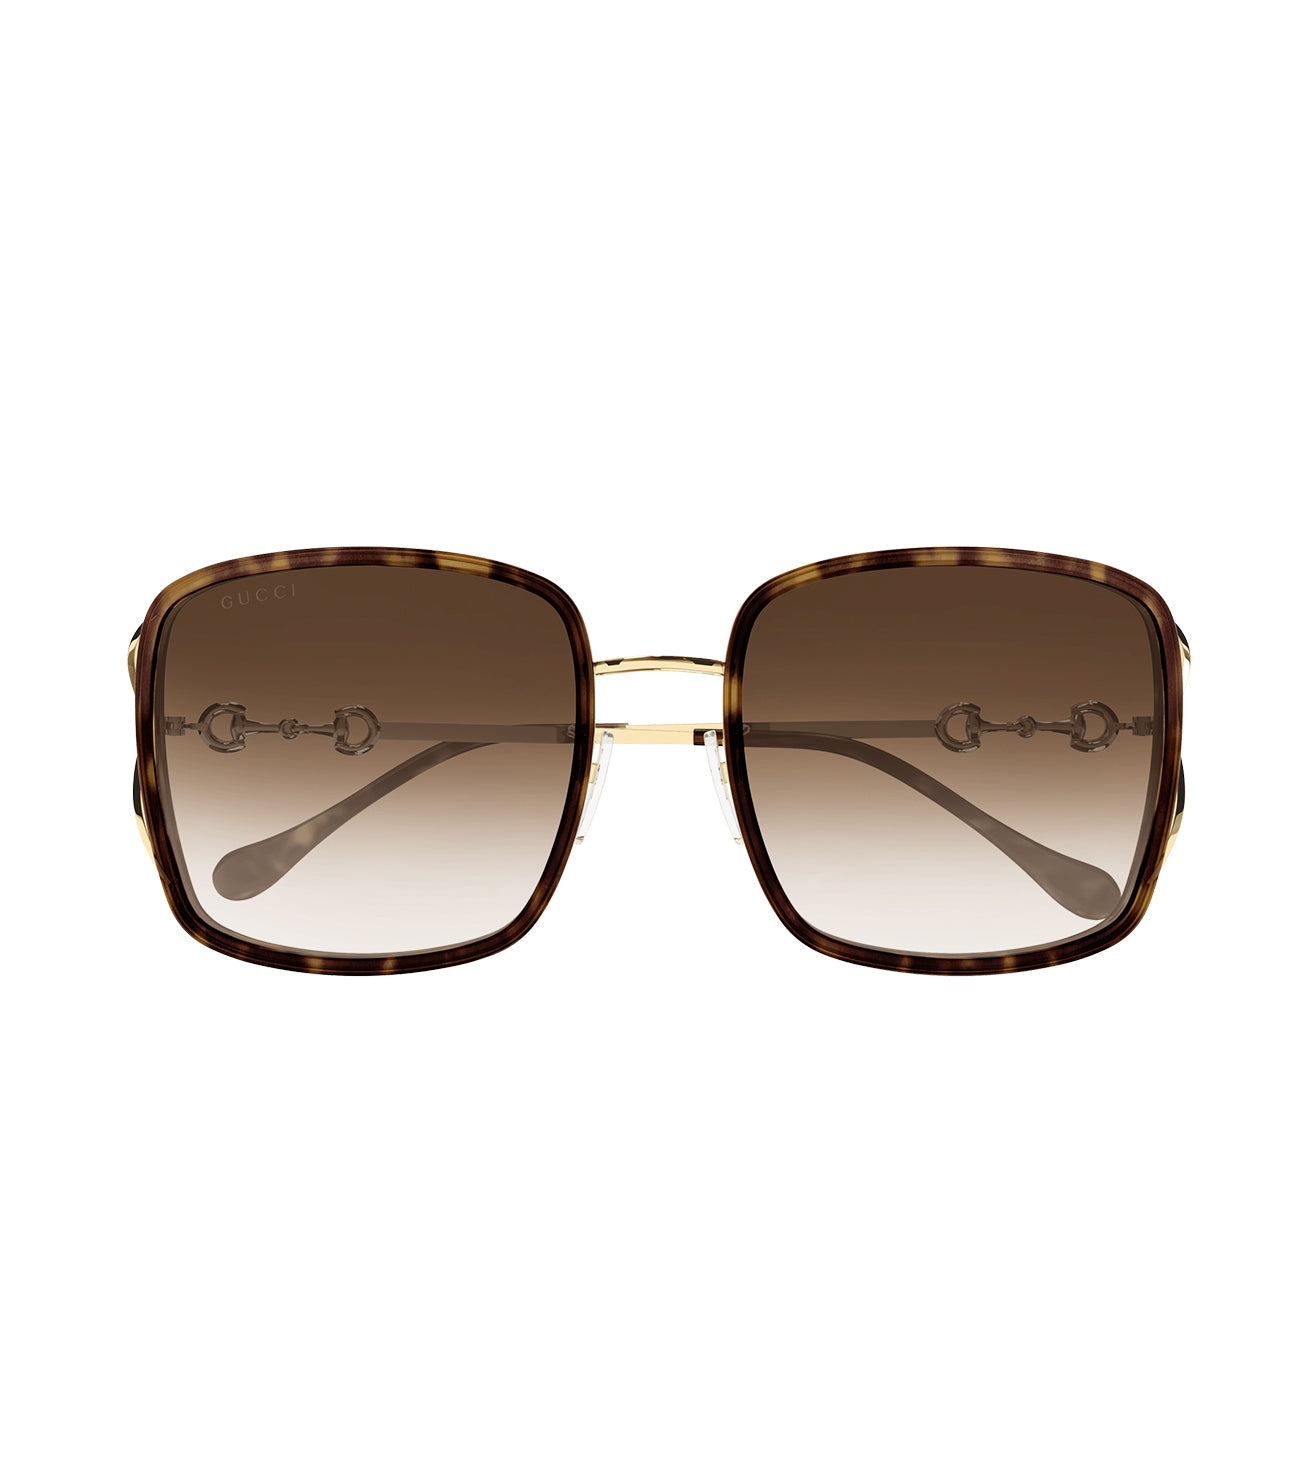 Gucci Women's Brown Square Sunglasses